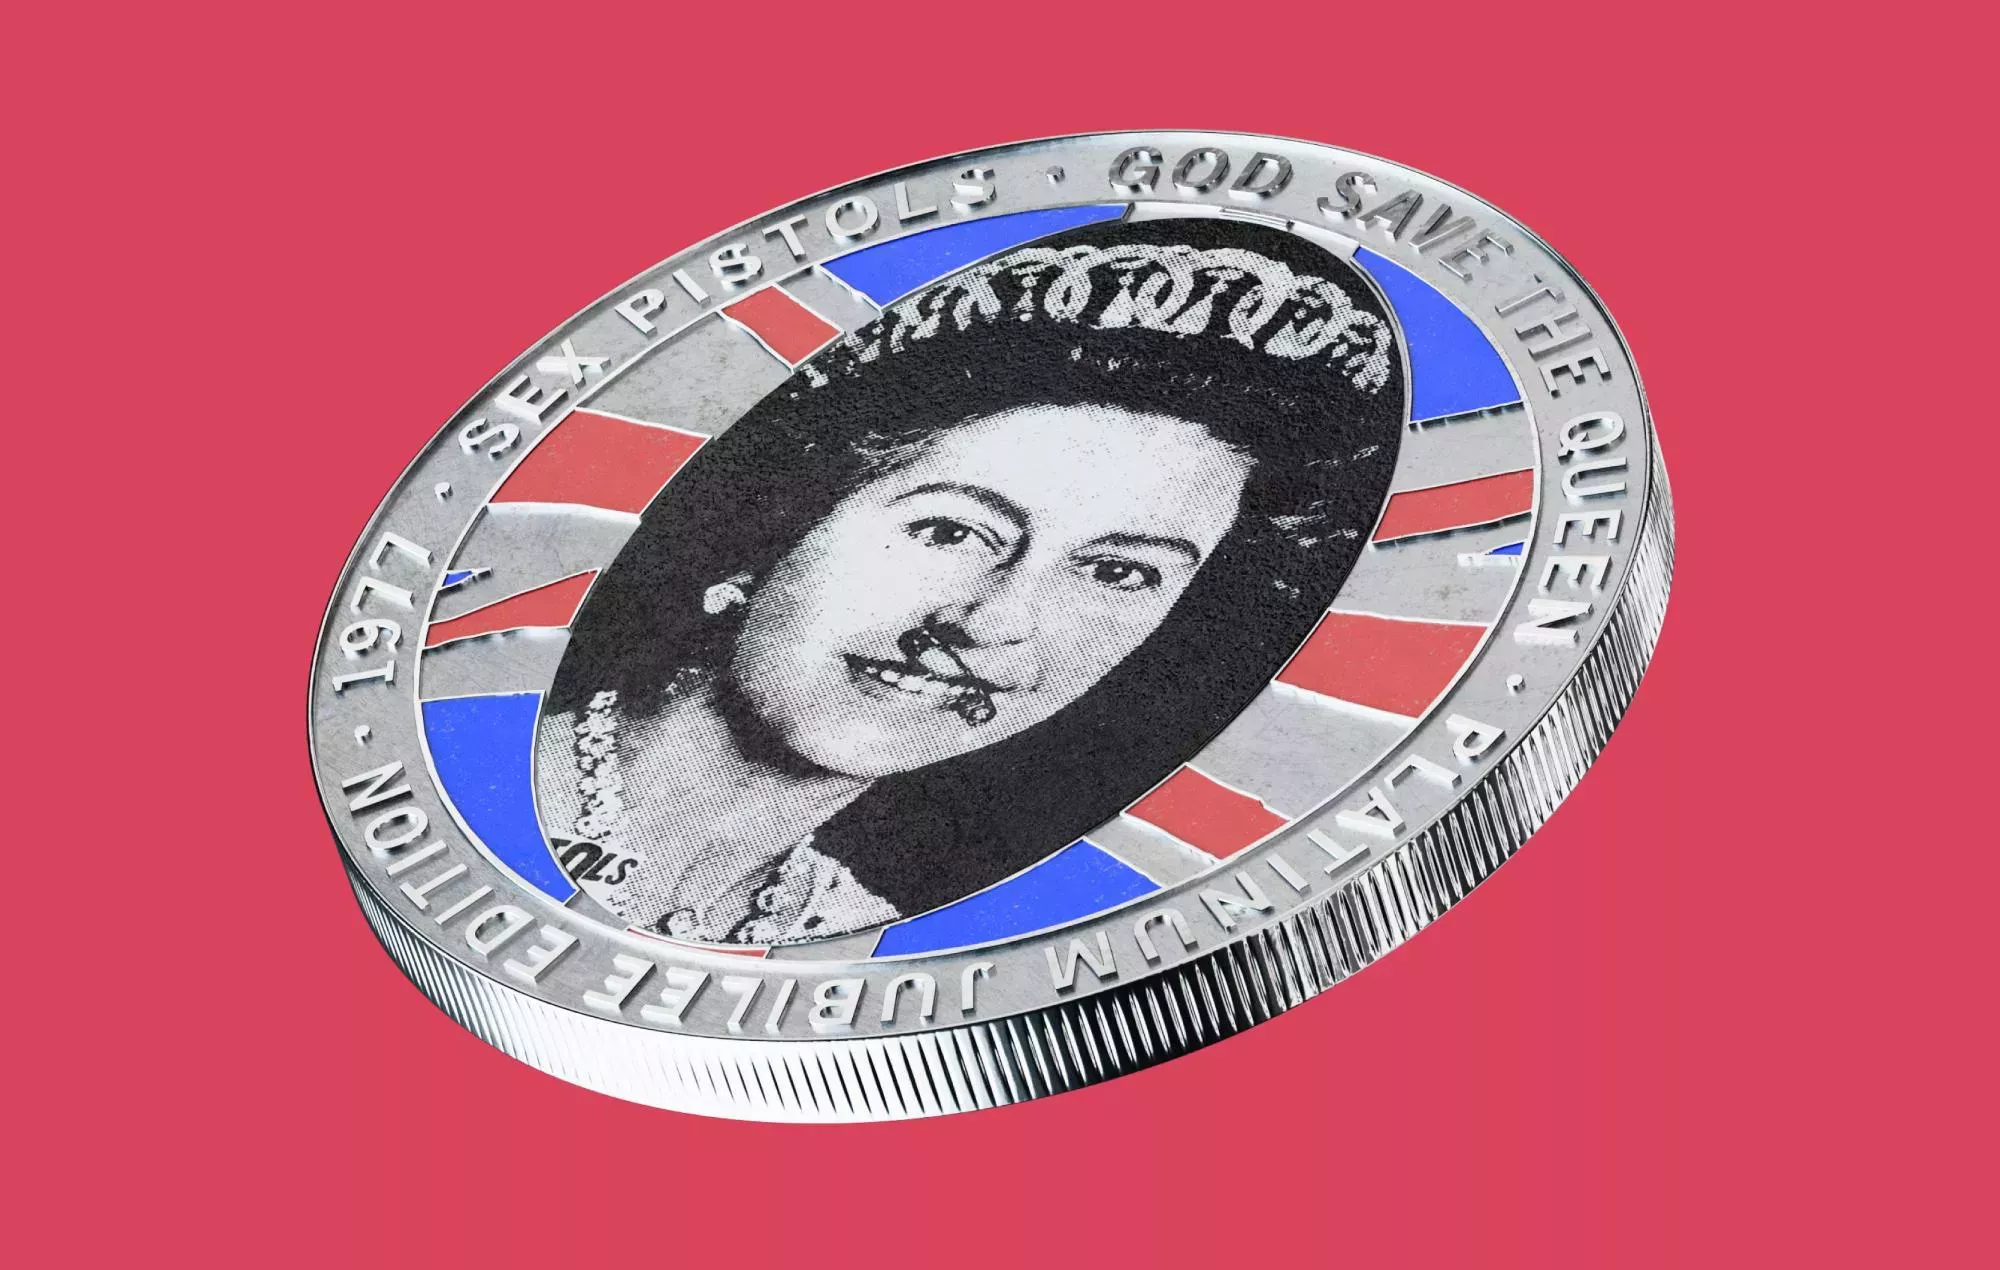 Lanzamiento de la moneda conmemorativa de Sex Pistols 'God Save The Queen' para el Jubileo de Platino